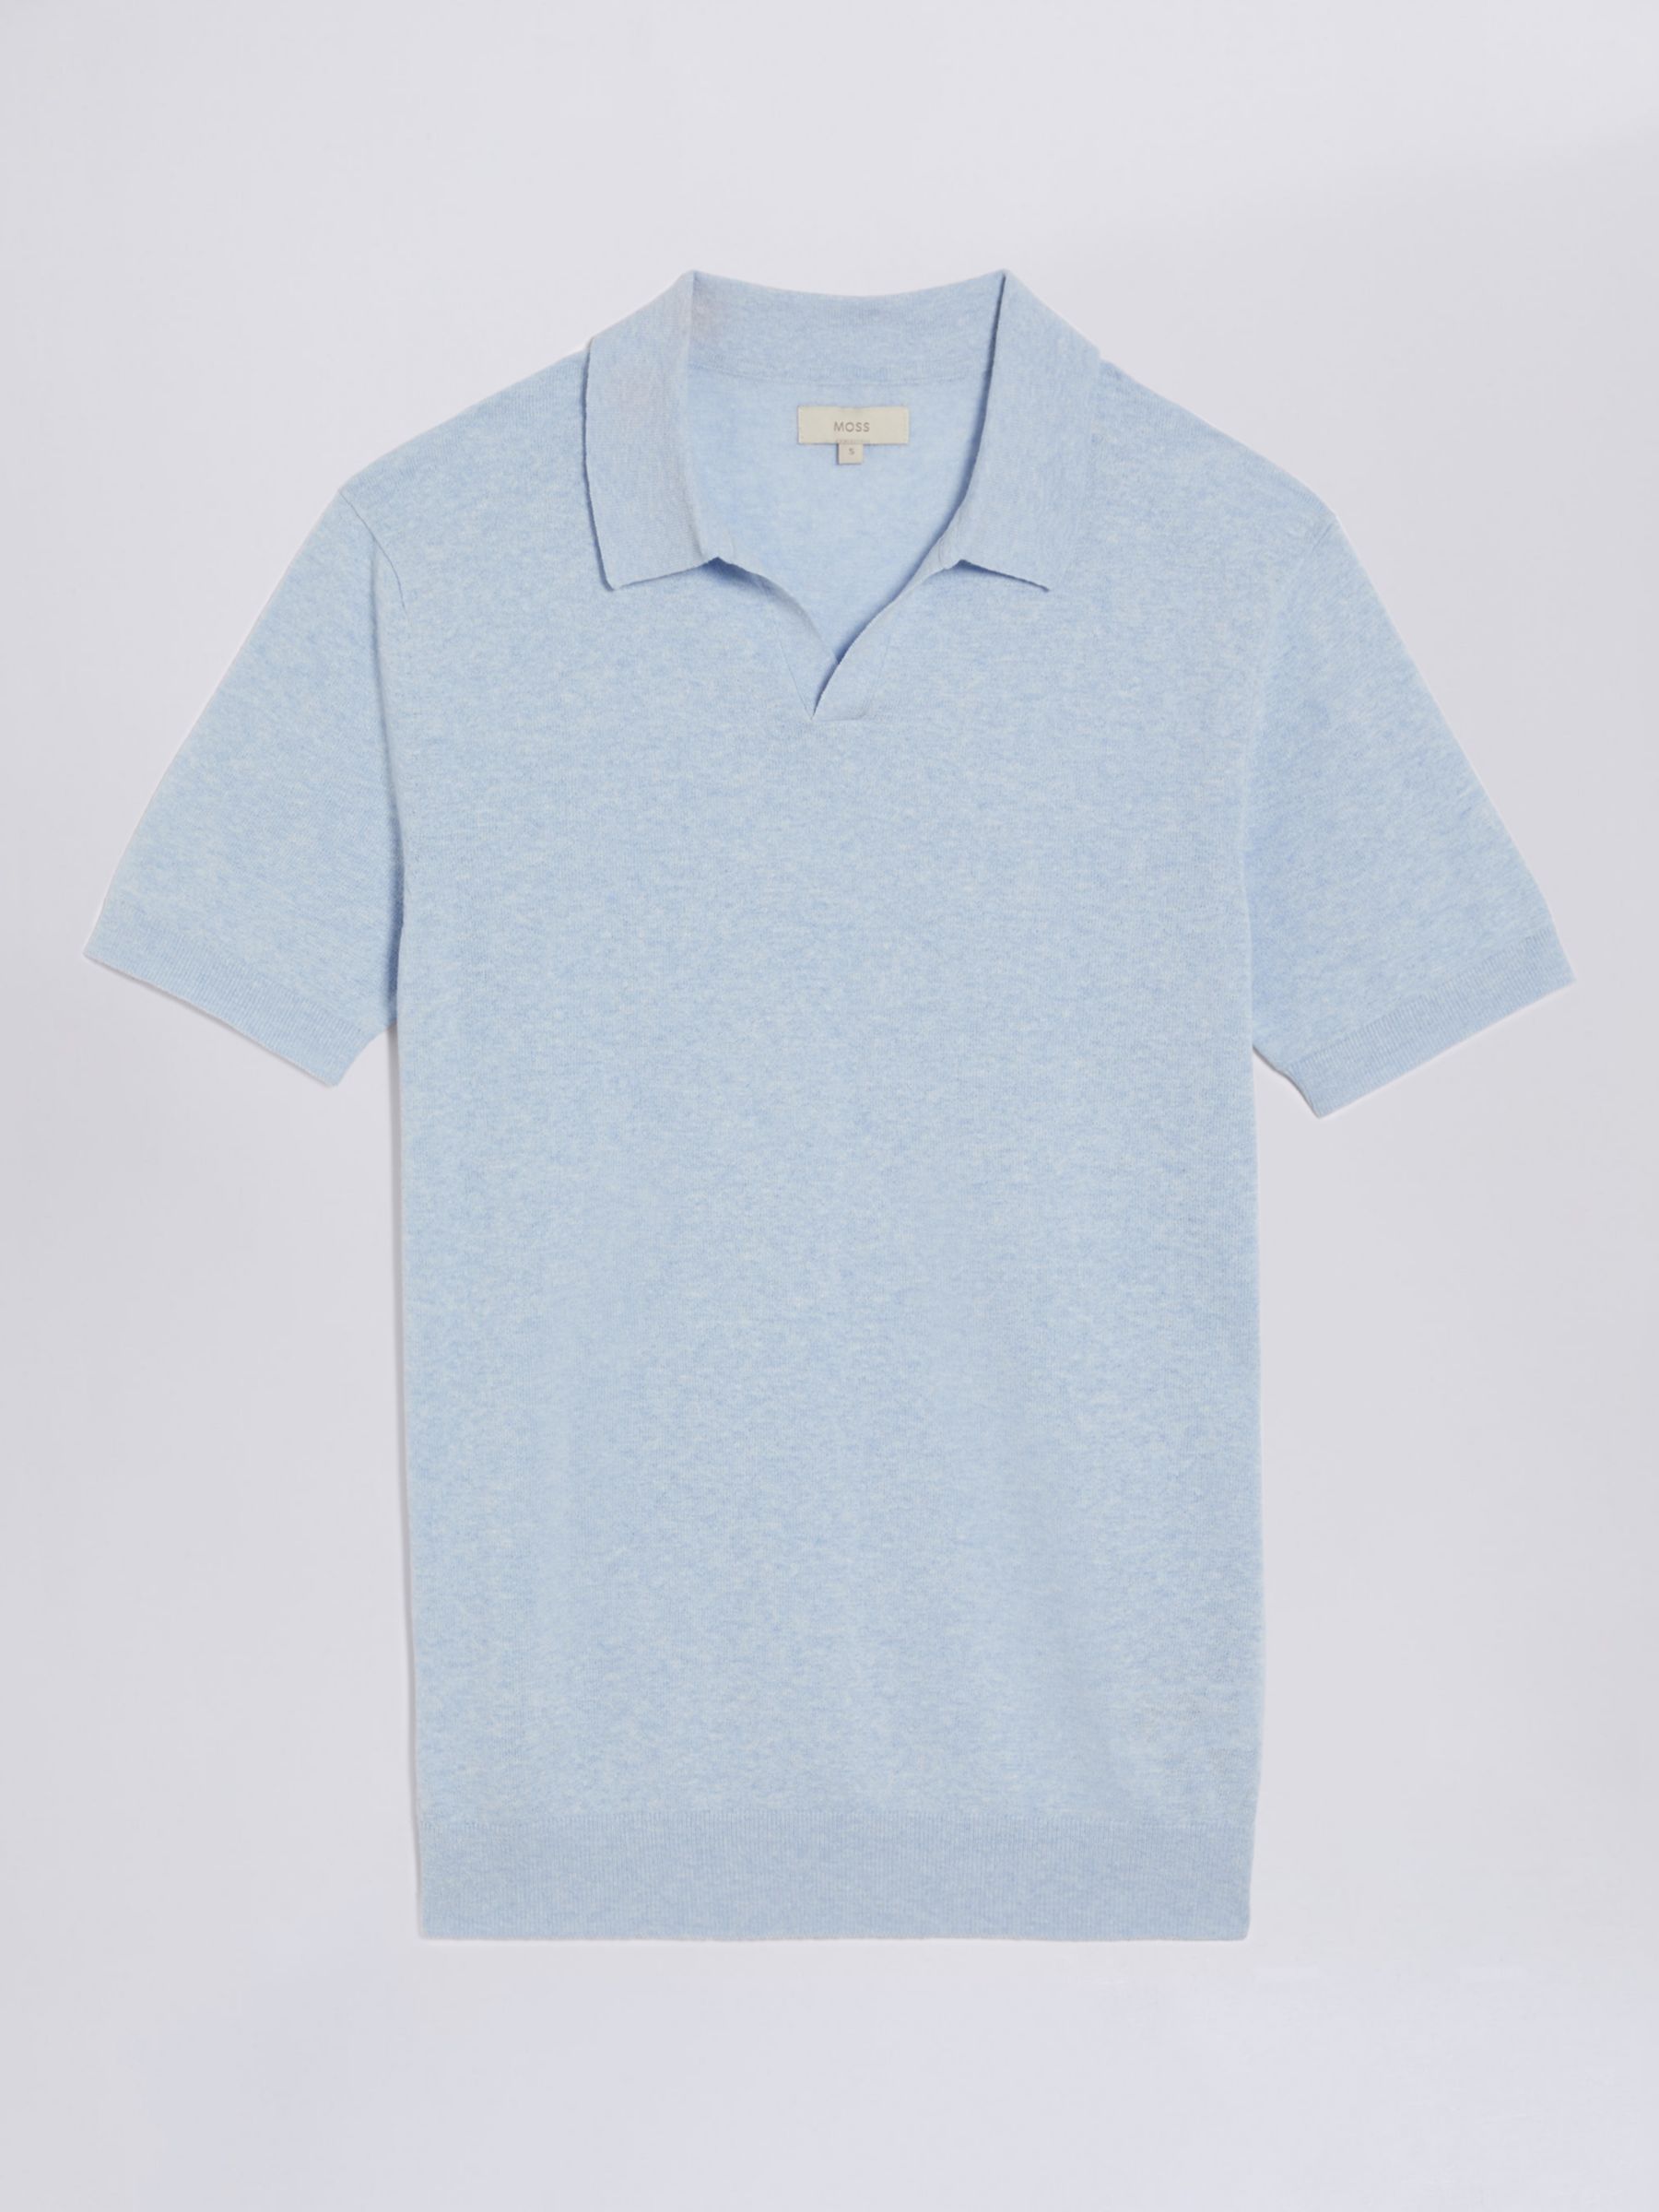 Moss Linen Blend Skipper Polo Shirt, Light Blue, S